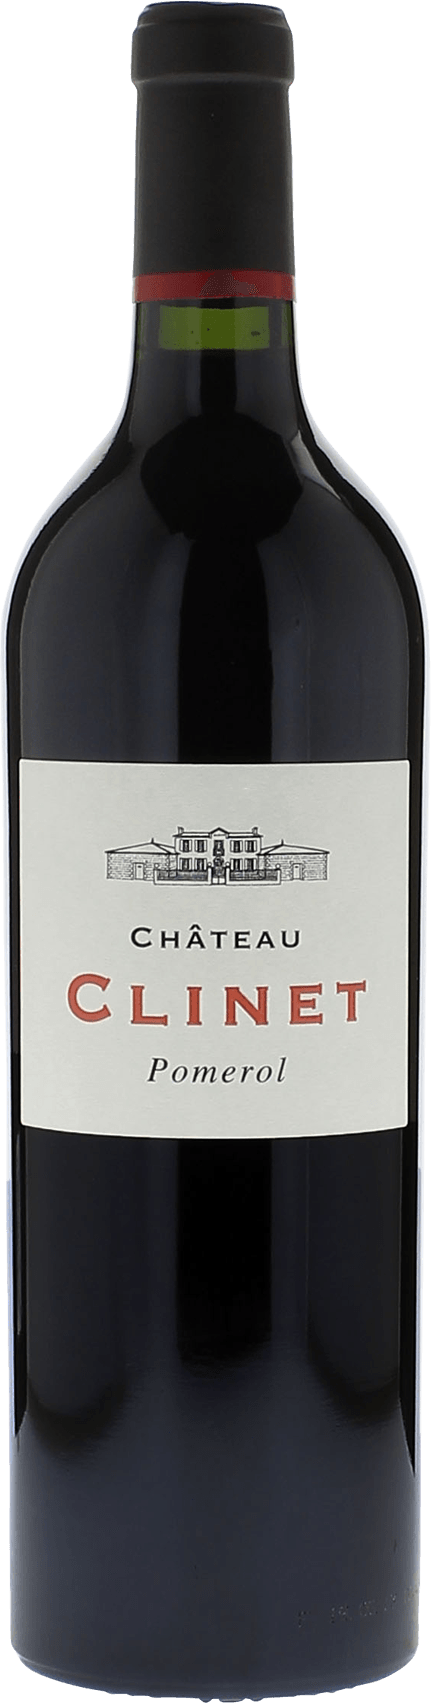 Clinet 2005  Pomerol, Bordeaux rouge